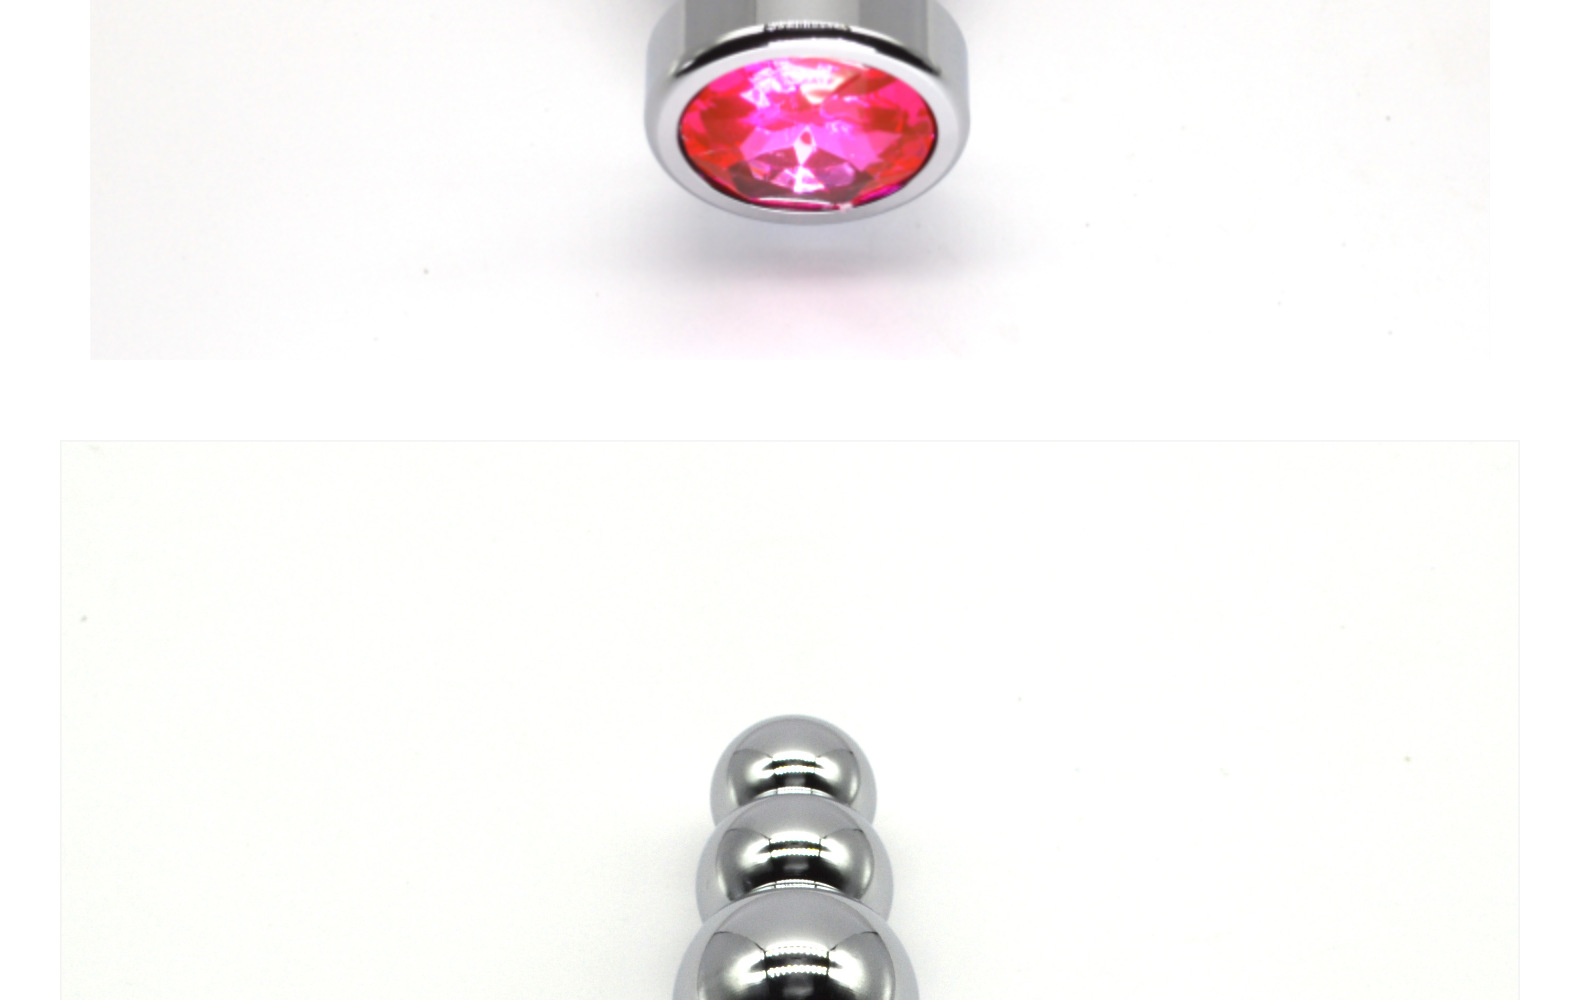 חרוזים אנאליים, תכשיטים צבעוניים מתכת תחתית מתכת צעצועי מאמנים אנאליים עם 5 כדורים מדורגים פטיש קינקי כלי אהבה למין לאוהבי זוג (9)